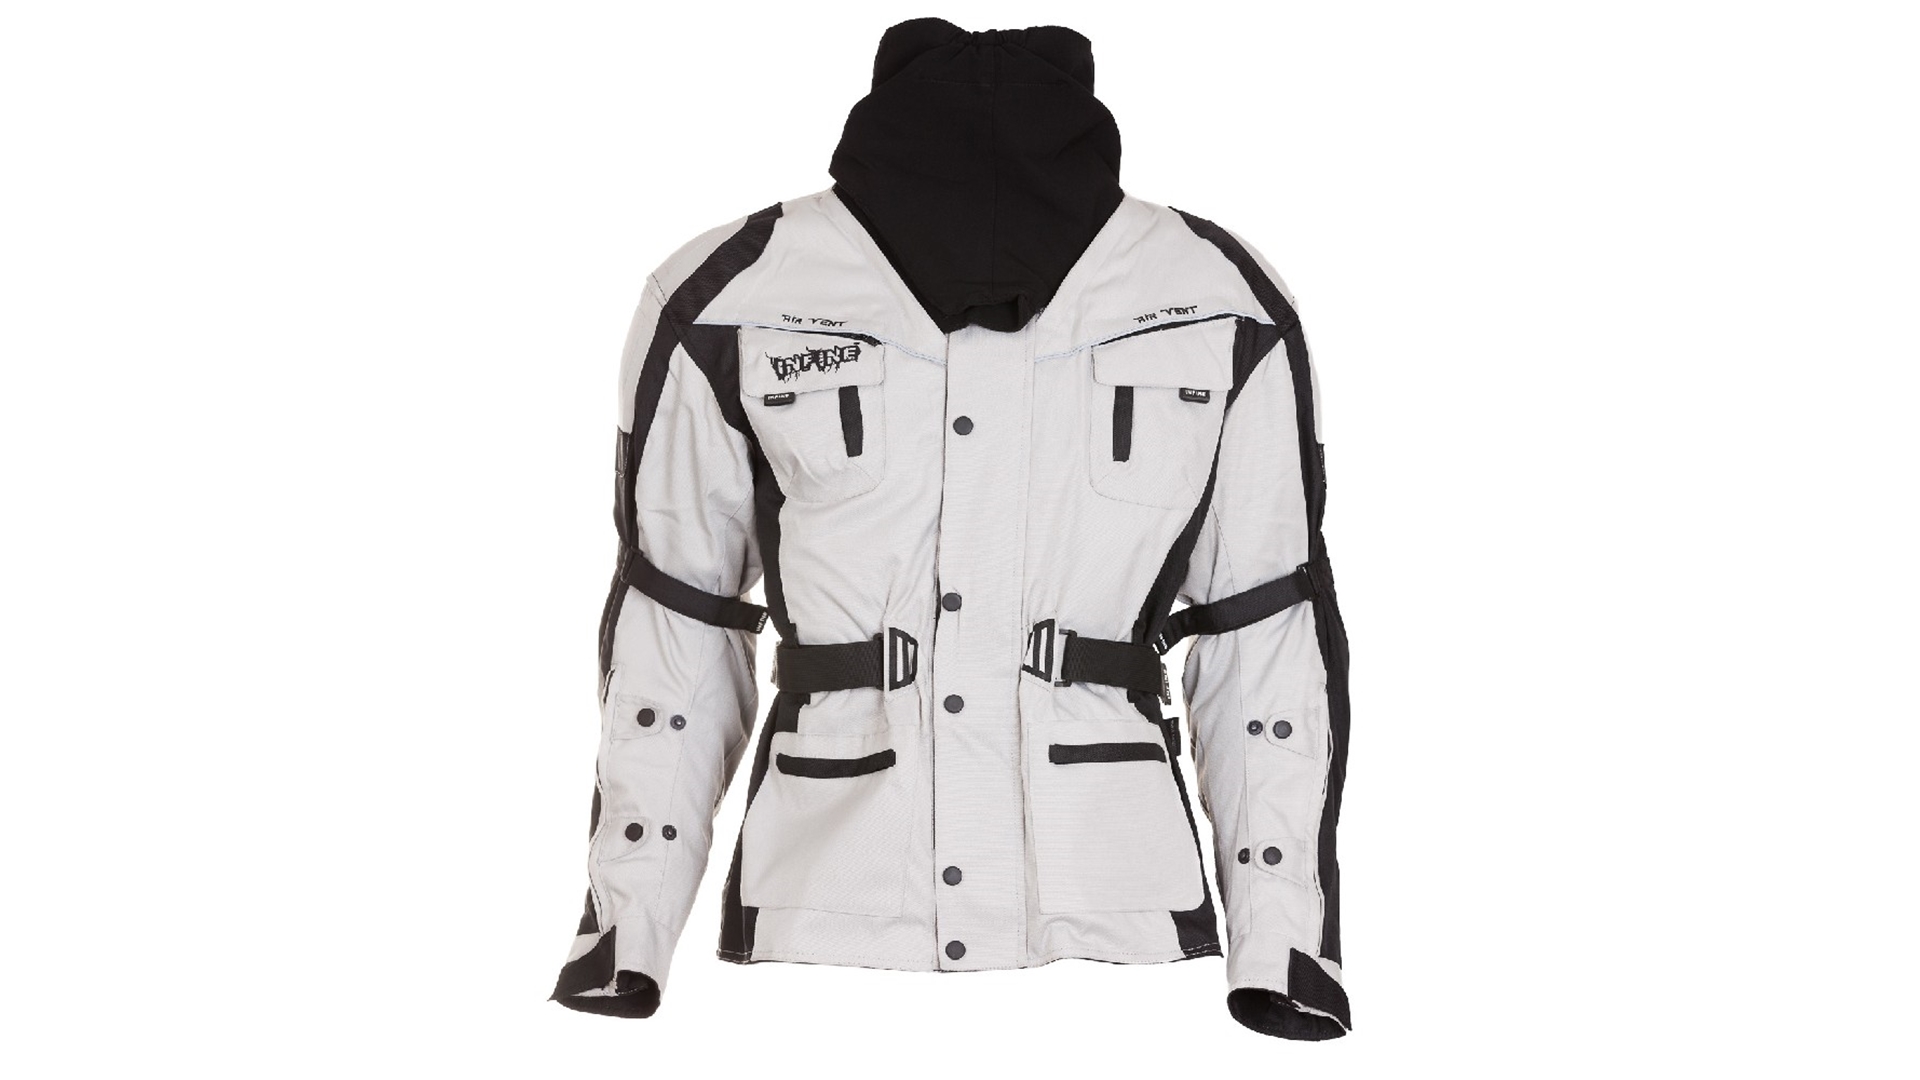 INFINE Sahara-GR textilní bunda černá/bílá černá/bílá S